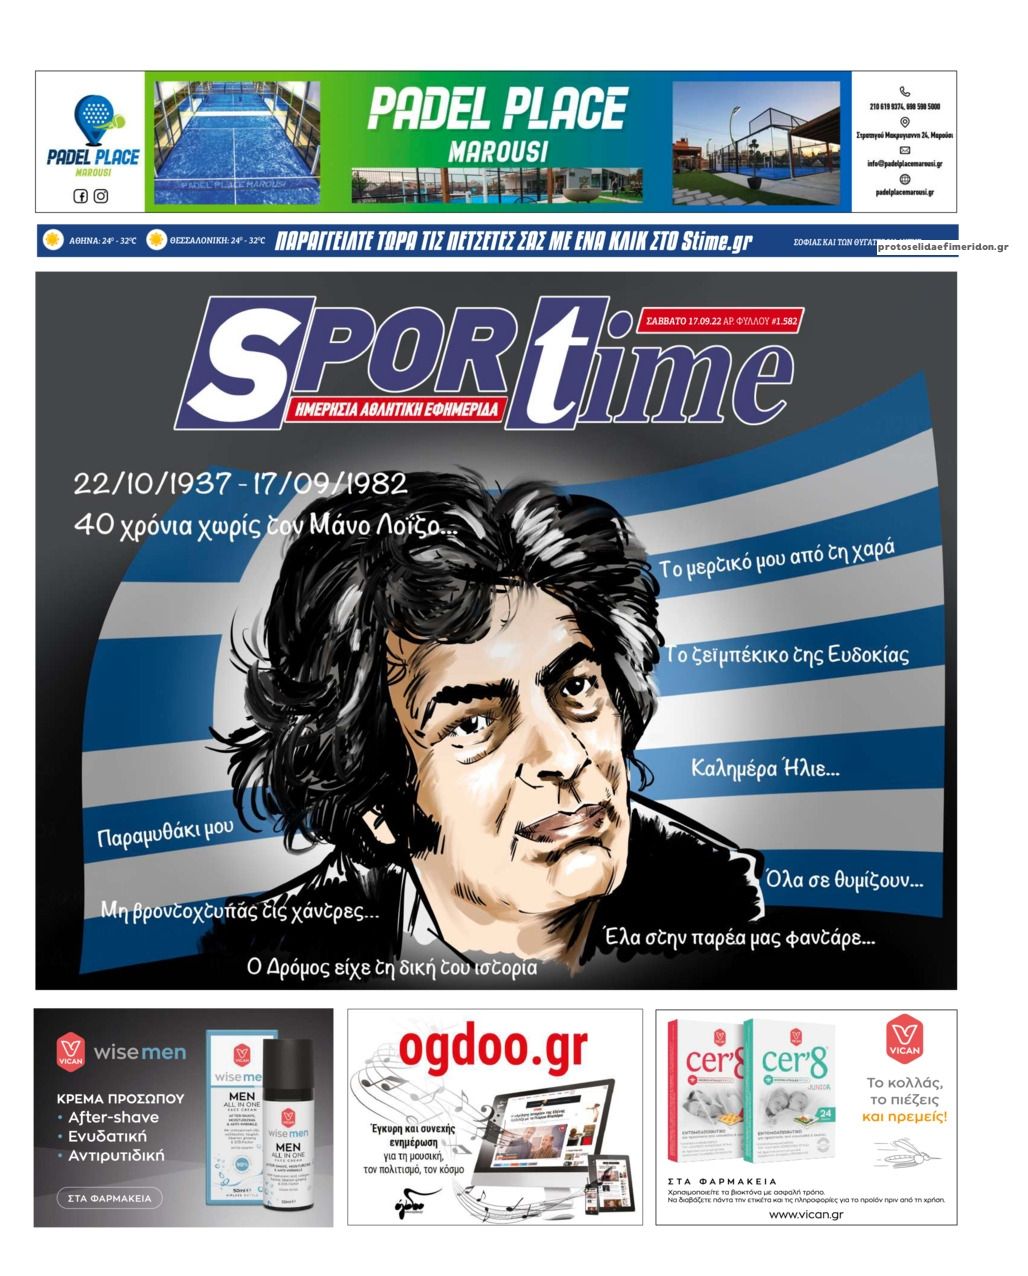 Πρωτοσέλιδο εφημερίδας Sportime